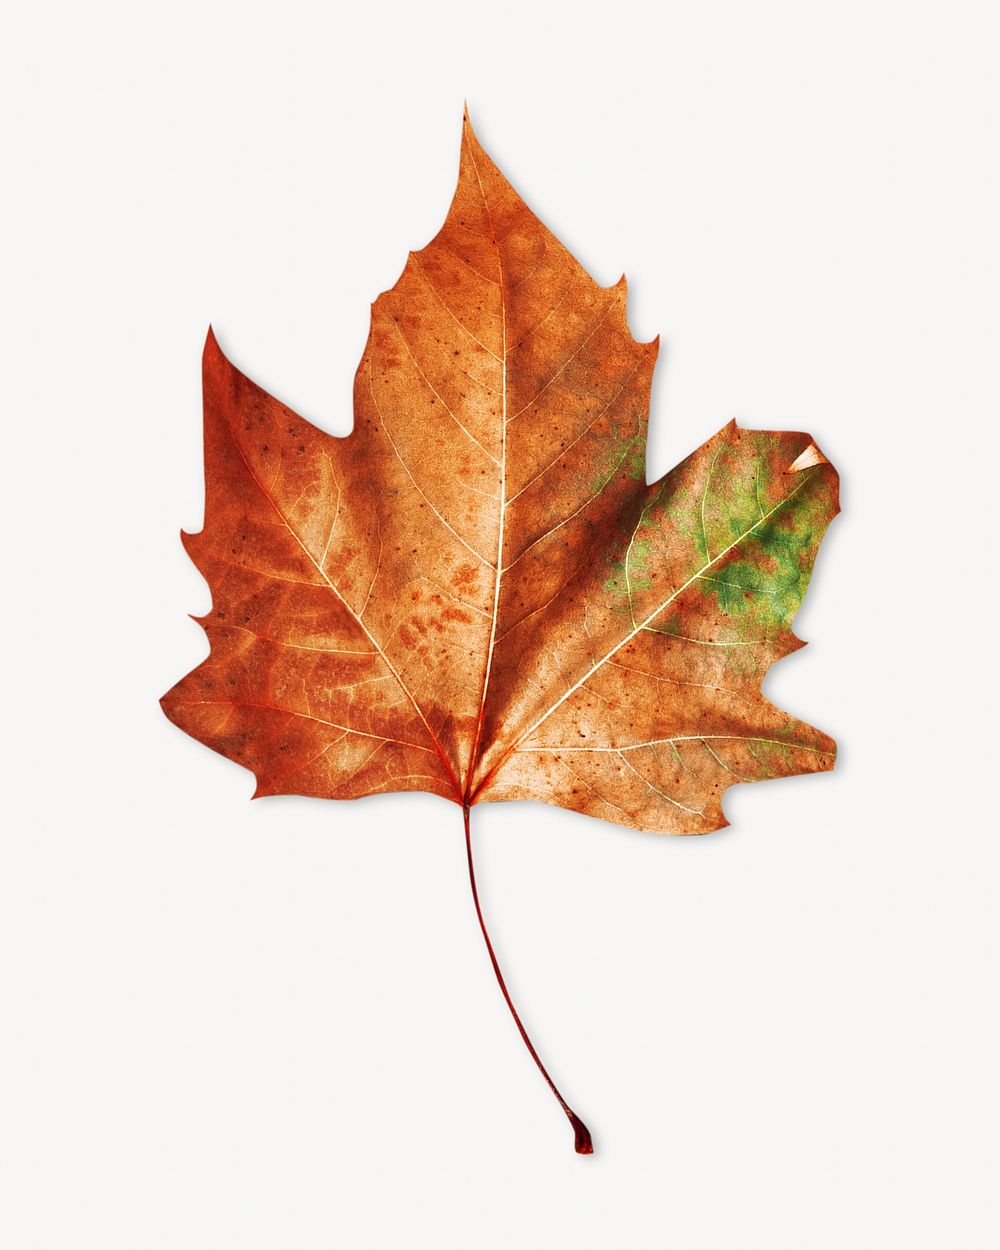 Autumn maple leaf isolated image on white